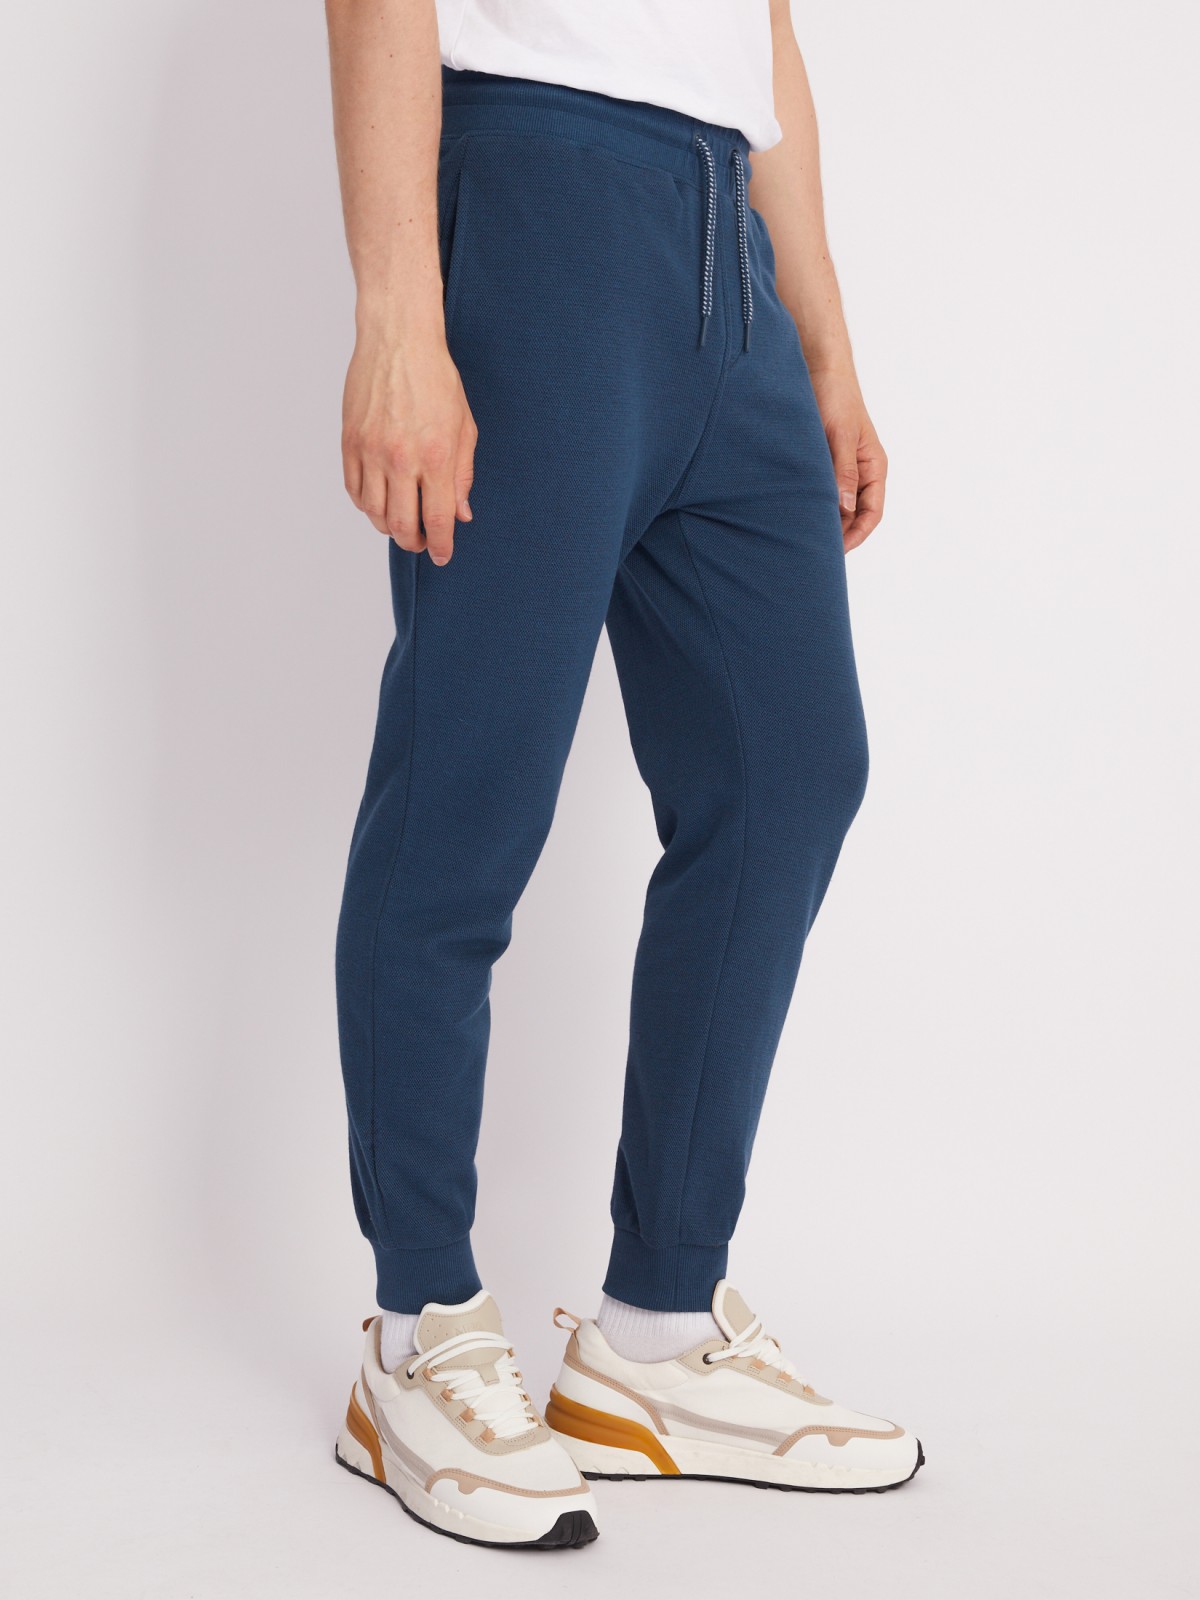 Трикотажные брюки-джоггеры в спортивном стиле zolla 21331762F012, цвет бирюзовый, размер S - фото 3